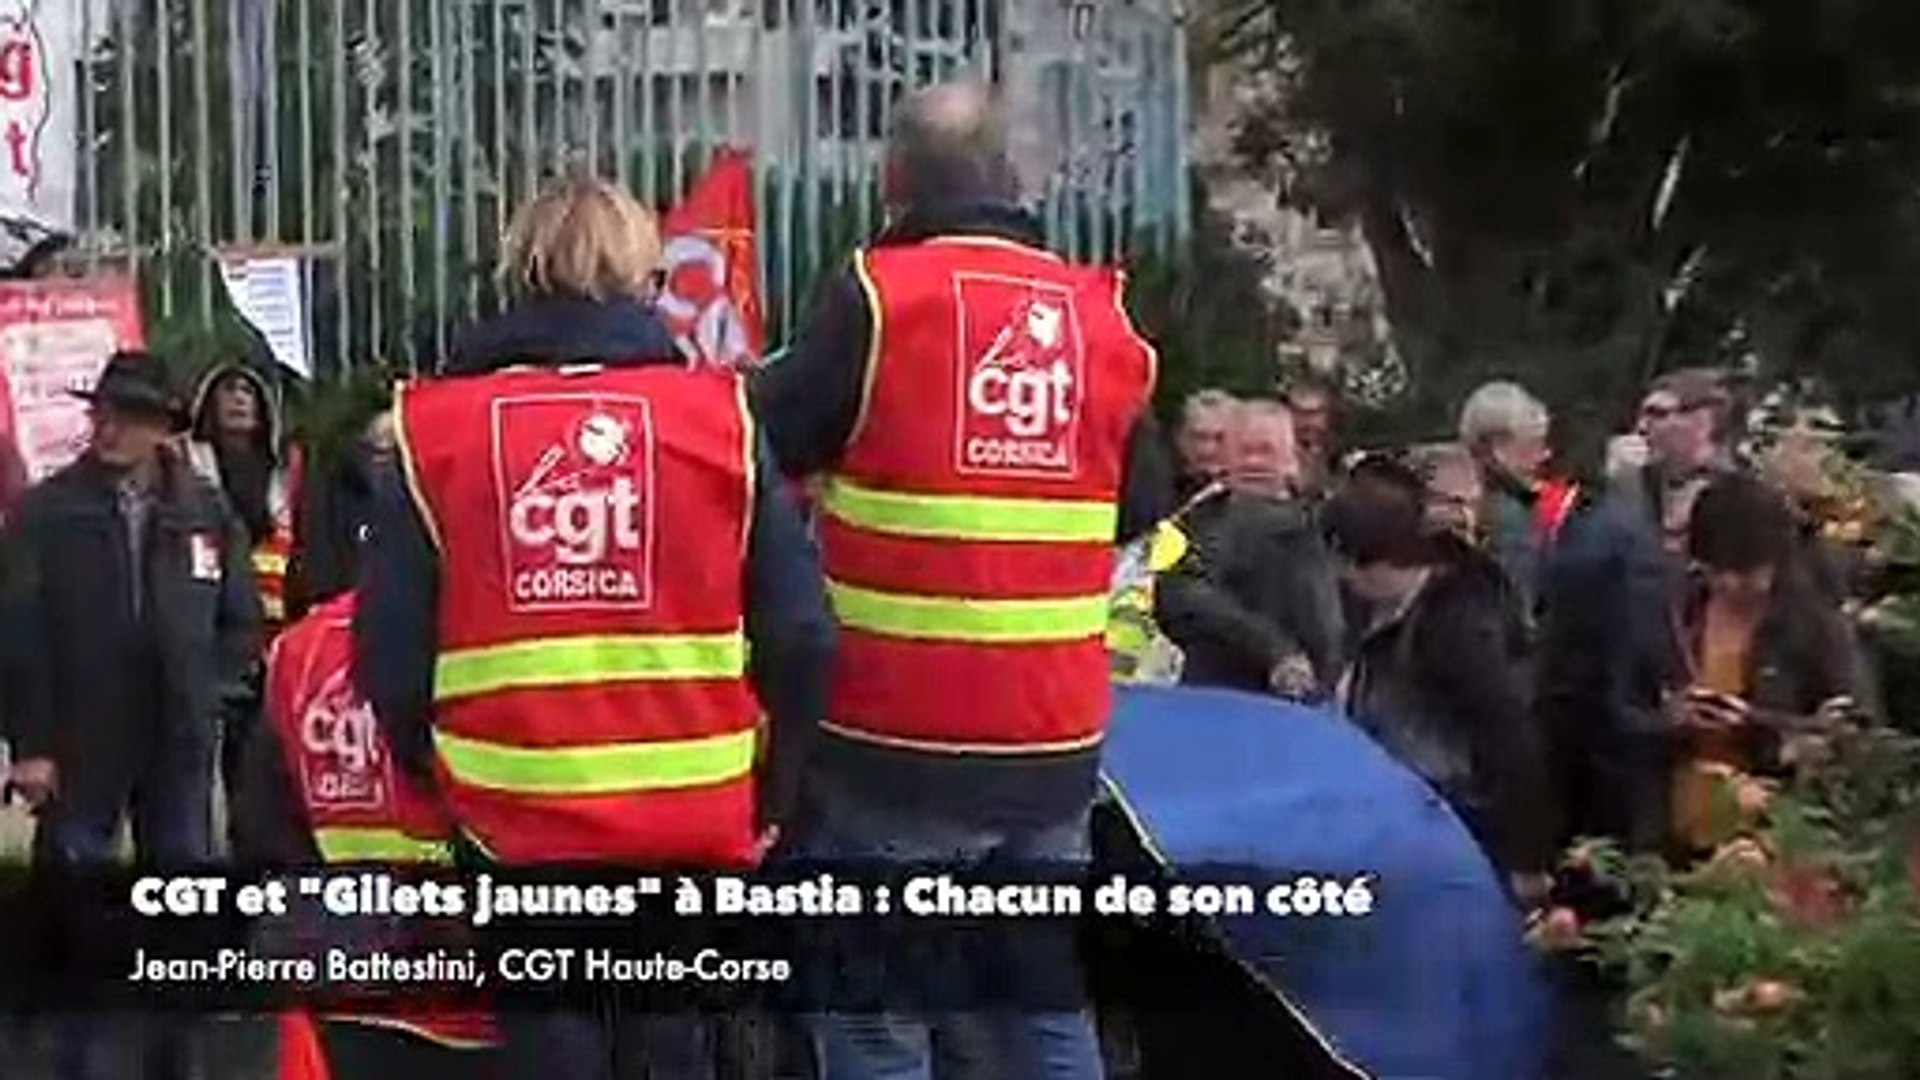 CGT et "Gilets jaunes" à Bastia : Chacun de son côté - Vidéo Dailymotion